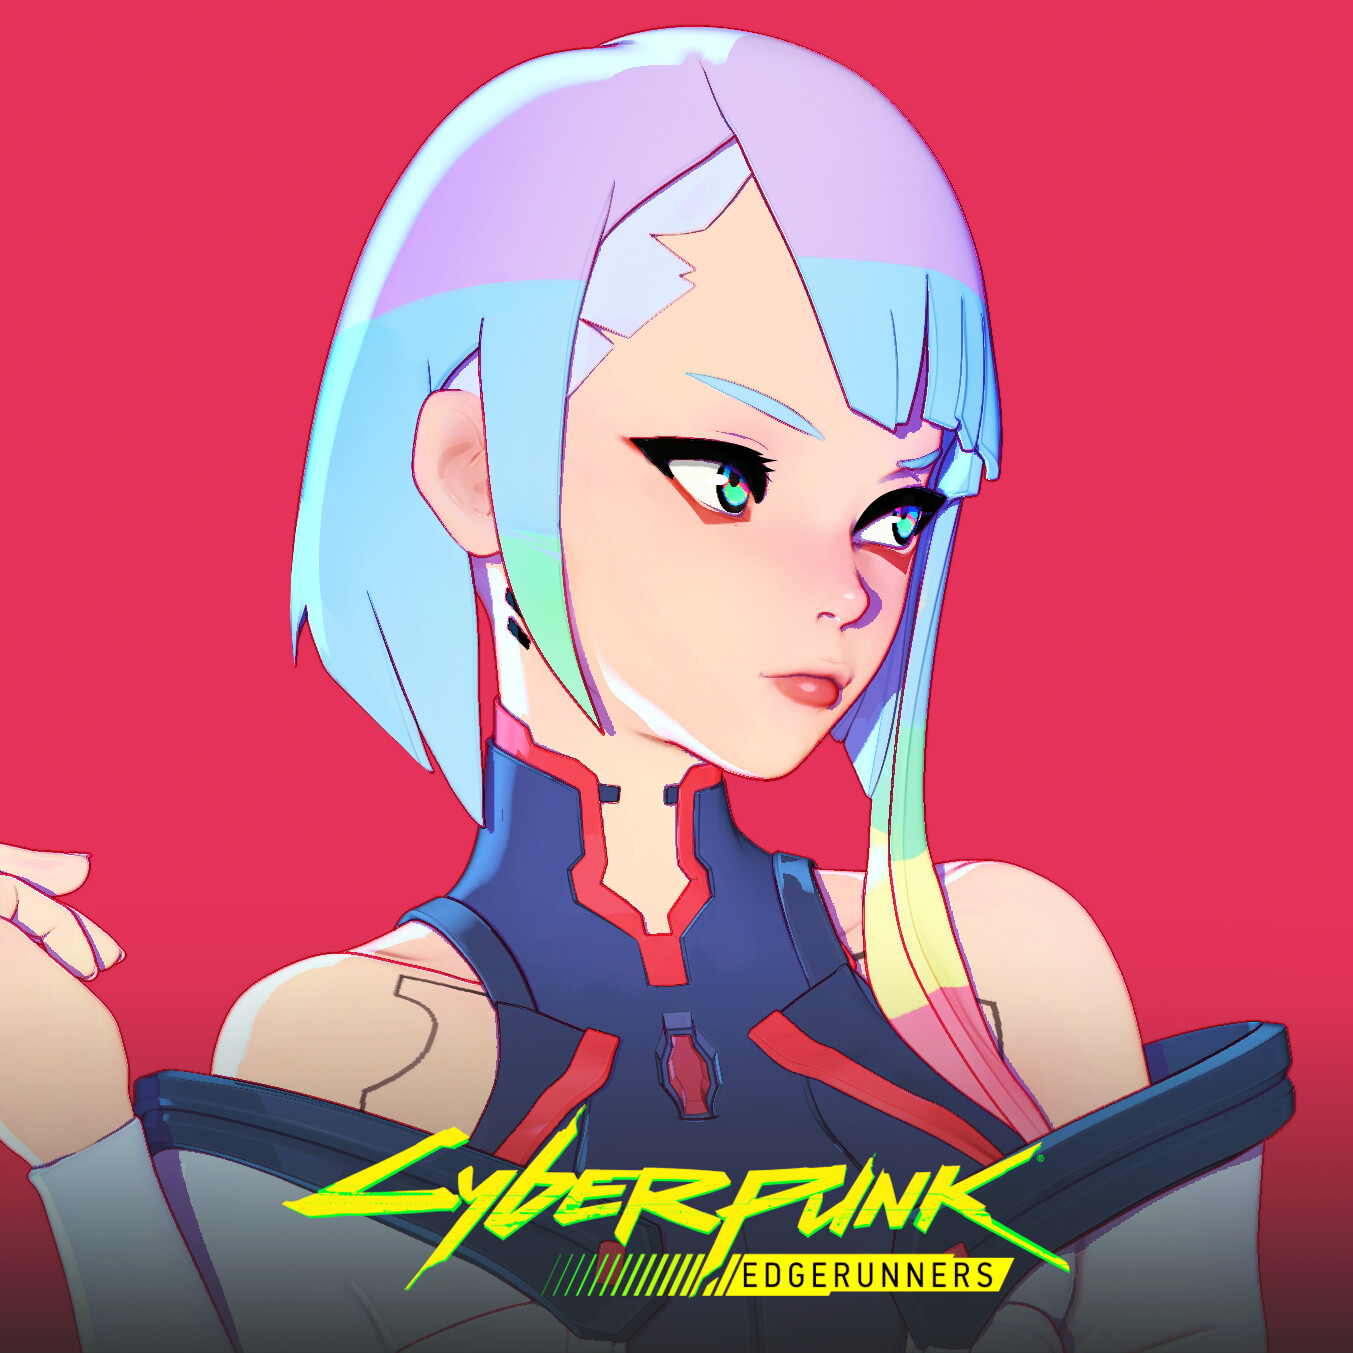 ArtStation - Lucy - Cyberpunk Edgerunners